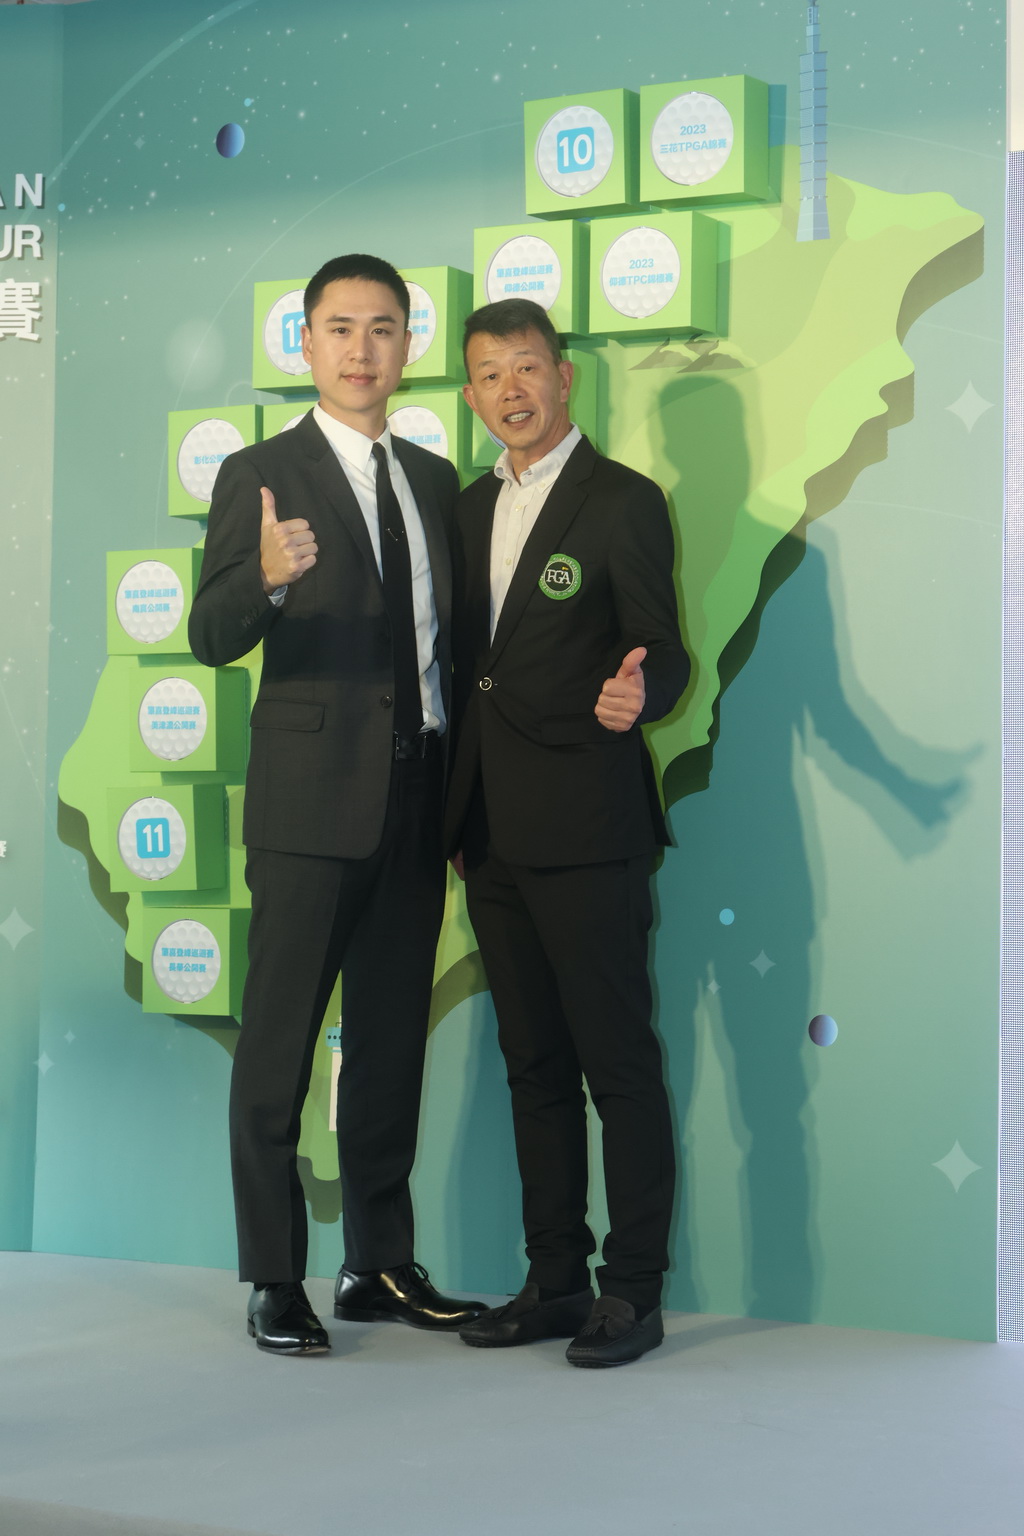 仰德育樂公司總經理許家堯(左)代表比賽贊助商仰德集團與TPGA理事長陳榮興合影。鍾豐榮攝影